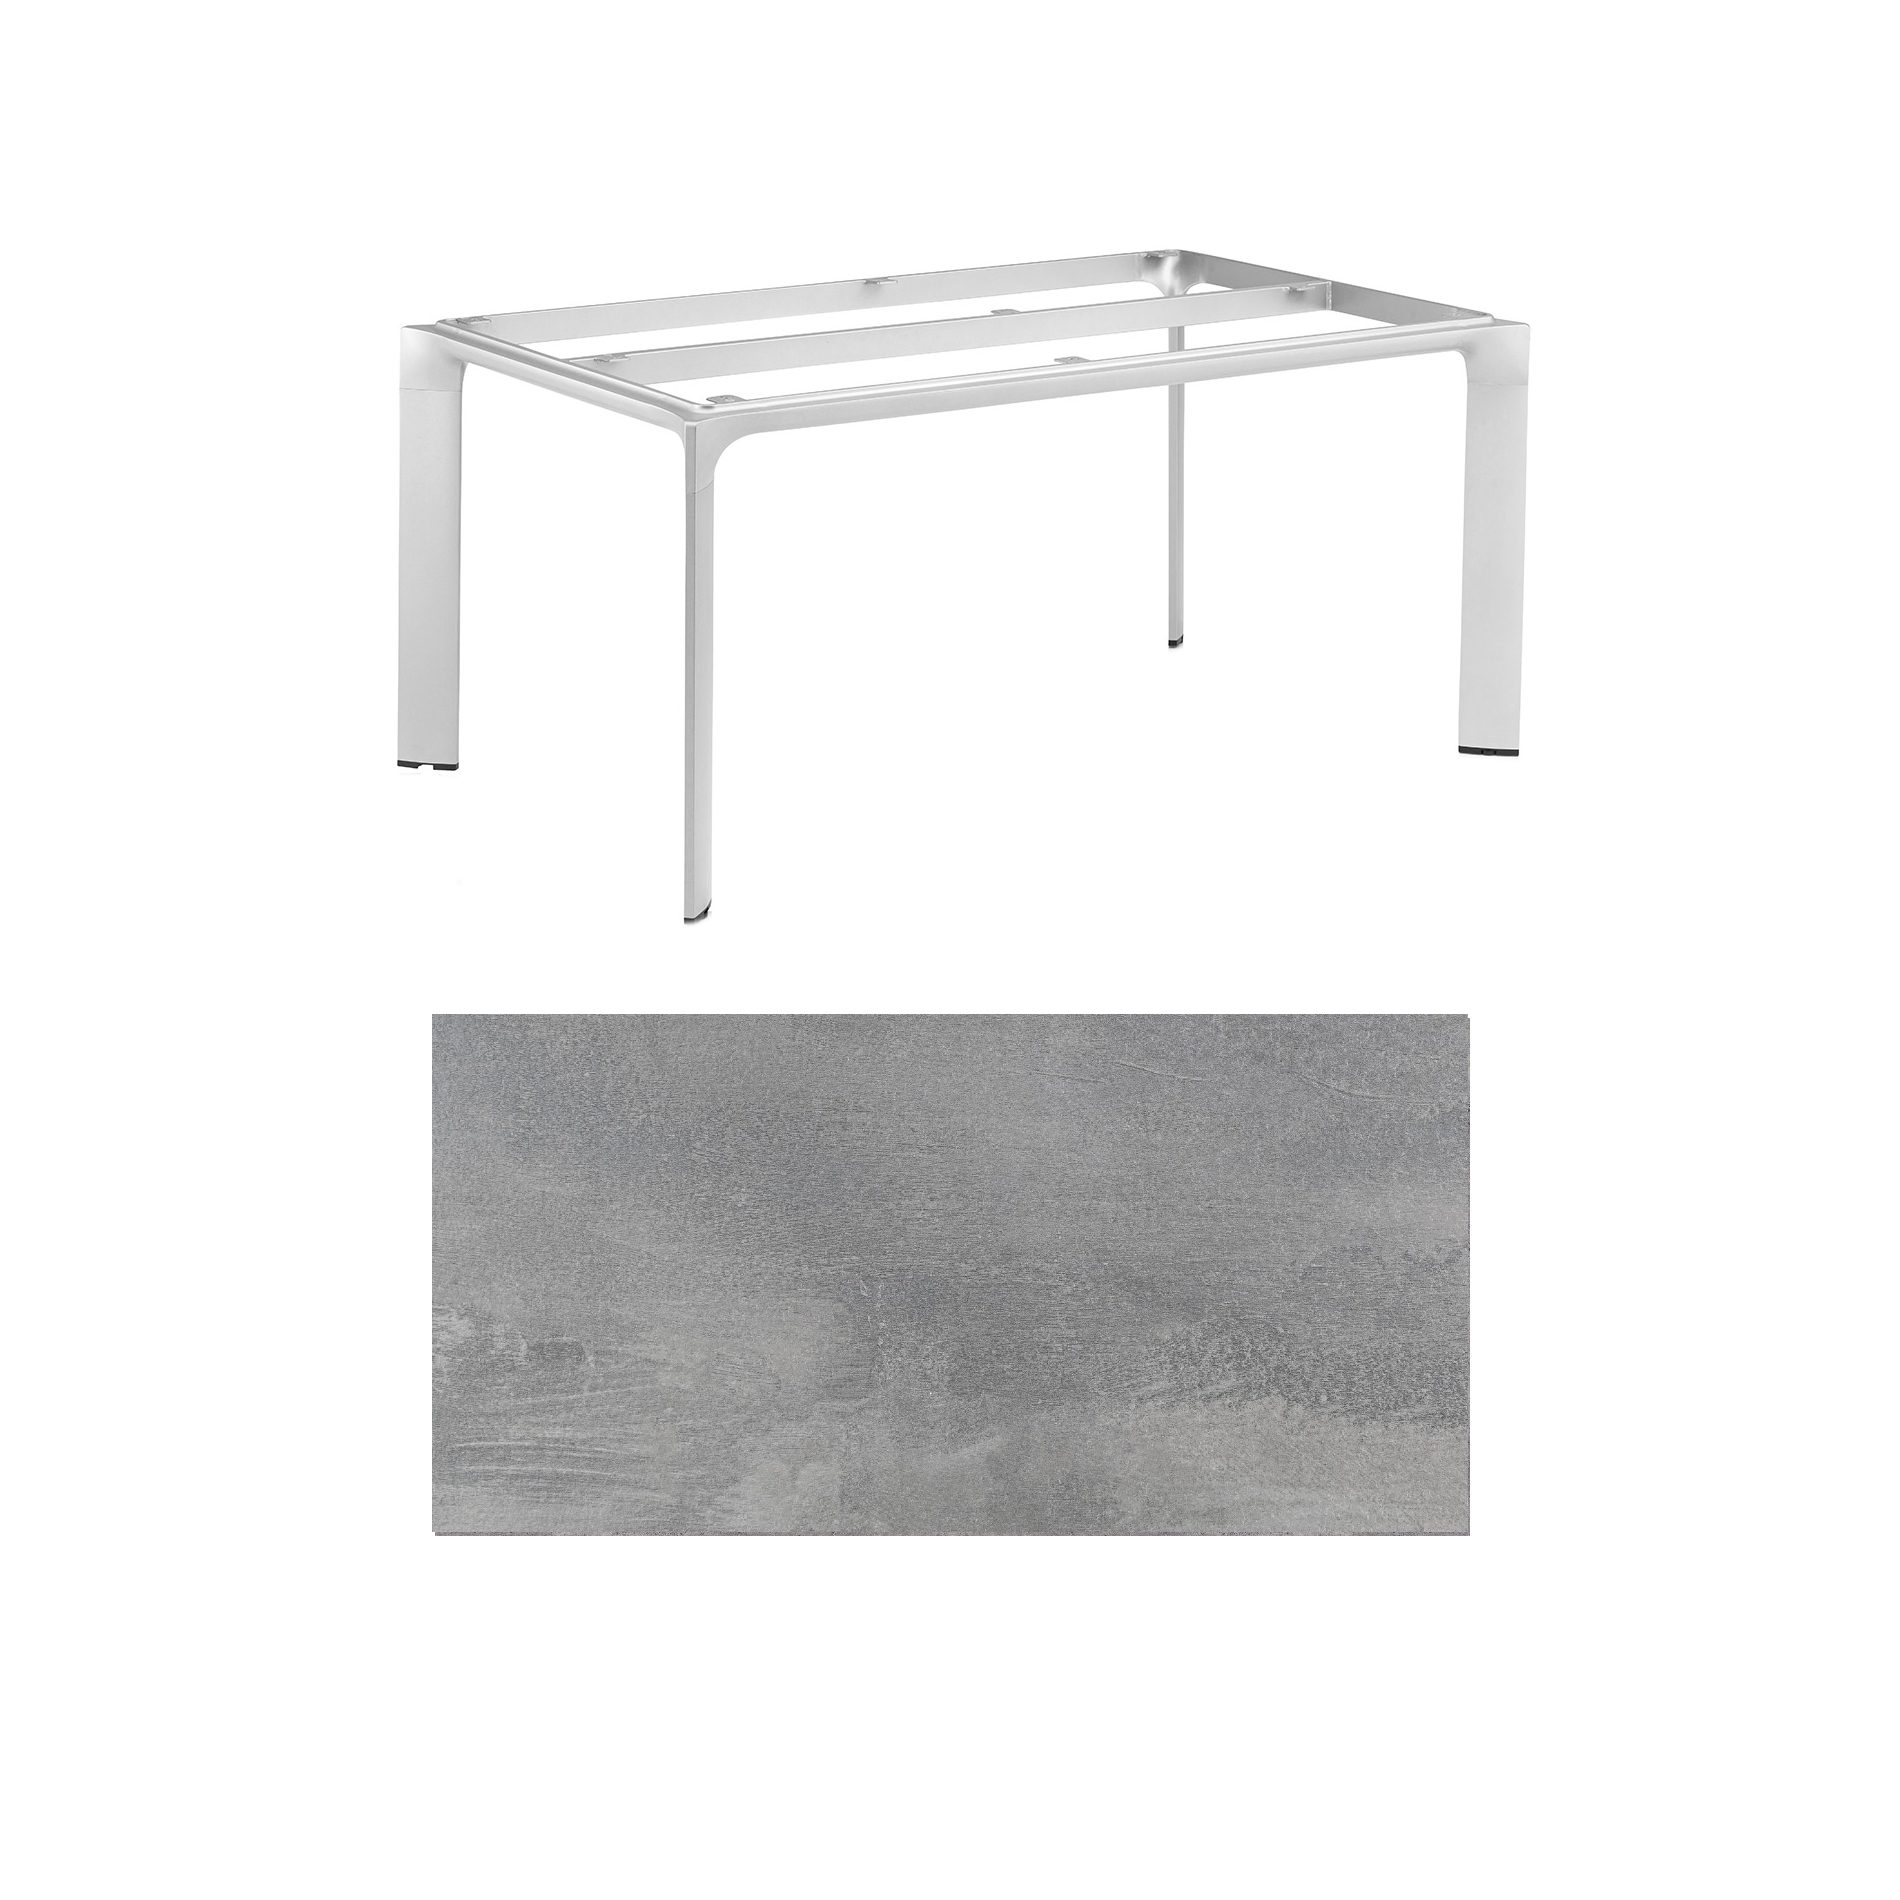 Kettler "Diamond" Tischsystem Gartentisch, Gestell Aluminium silber, Tischplatte HPL silber-grau, 180x95 cm